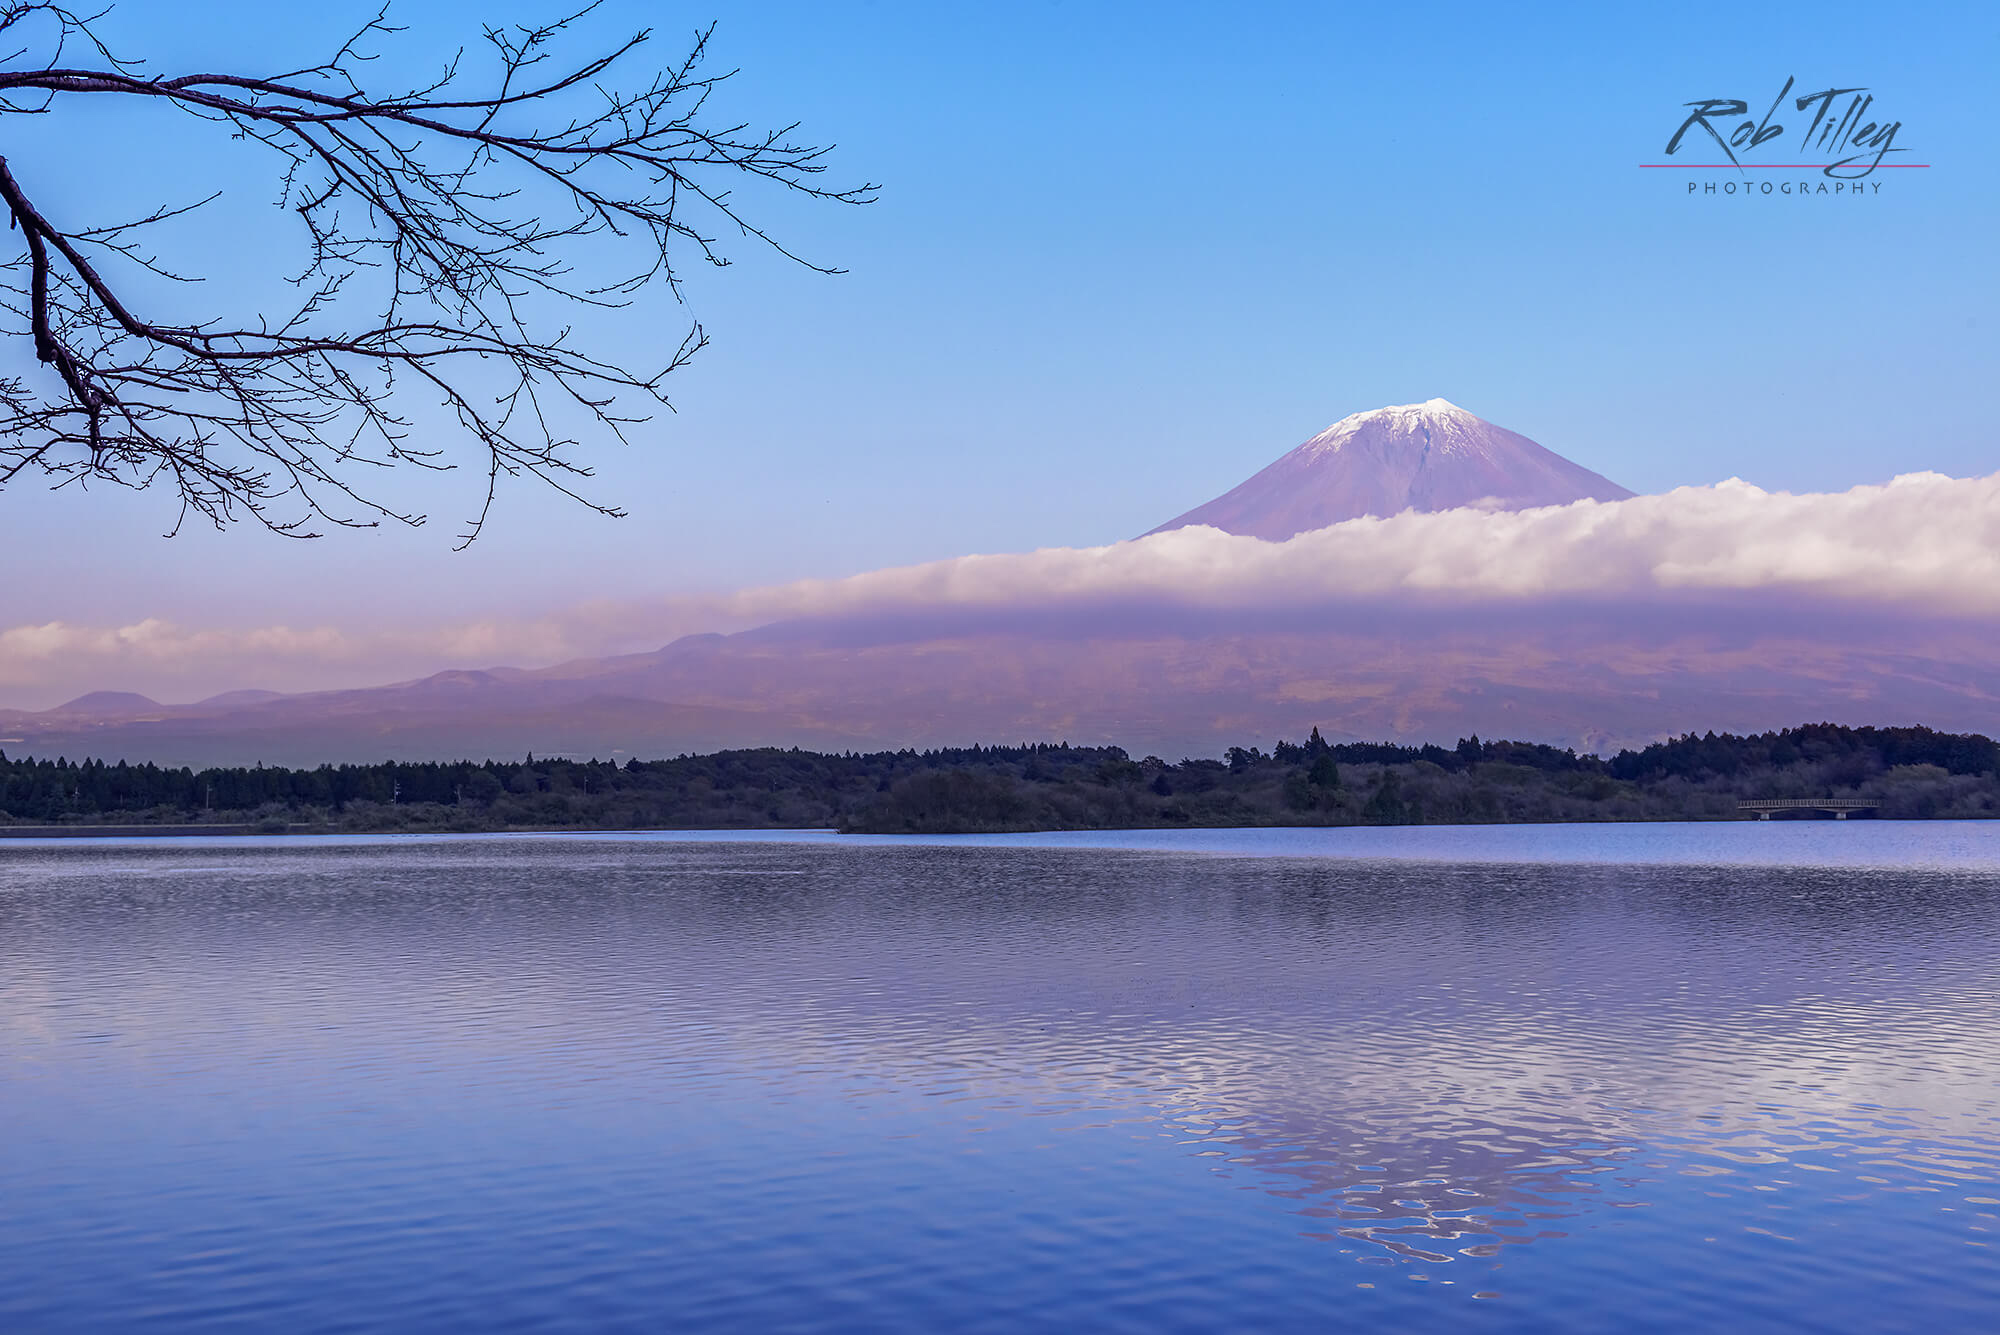 Mt. Fuji & Tanuki Lake I